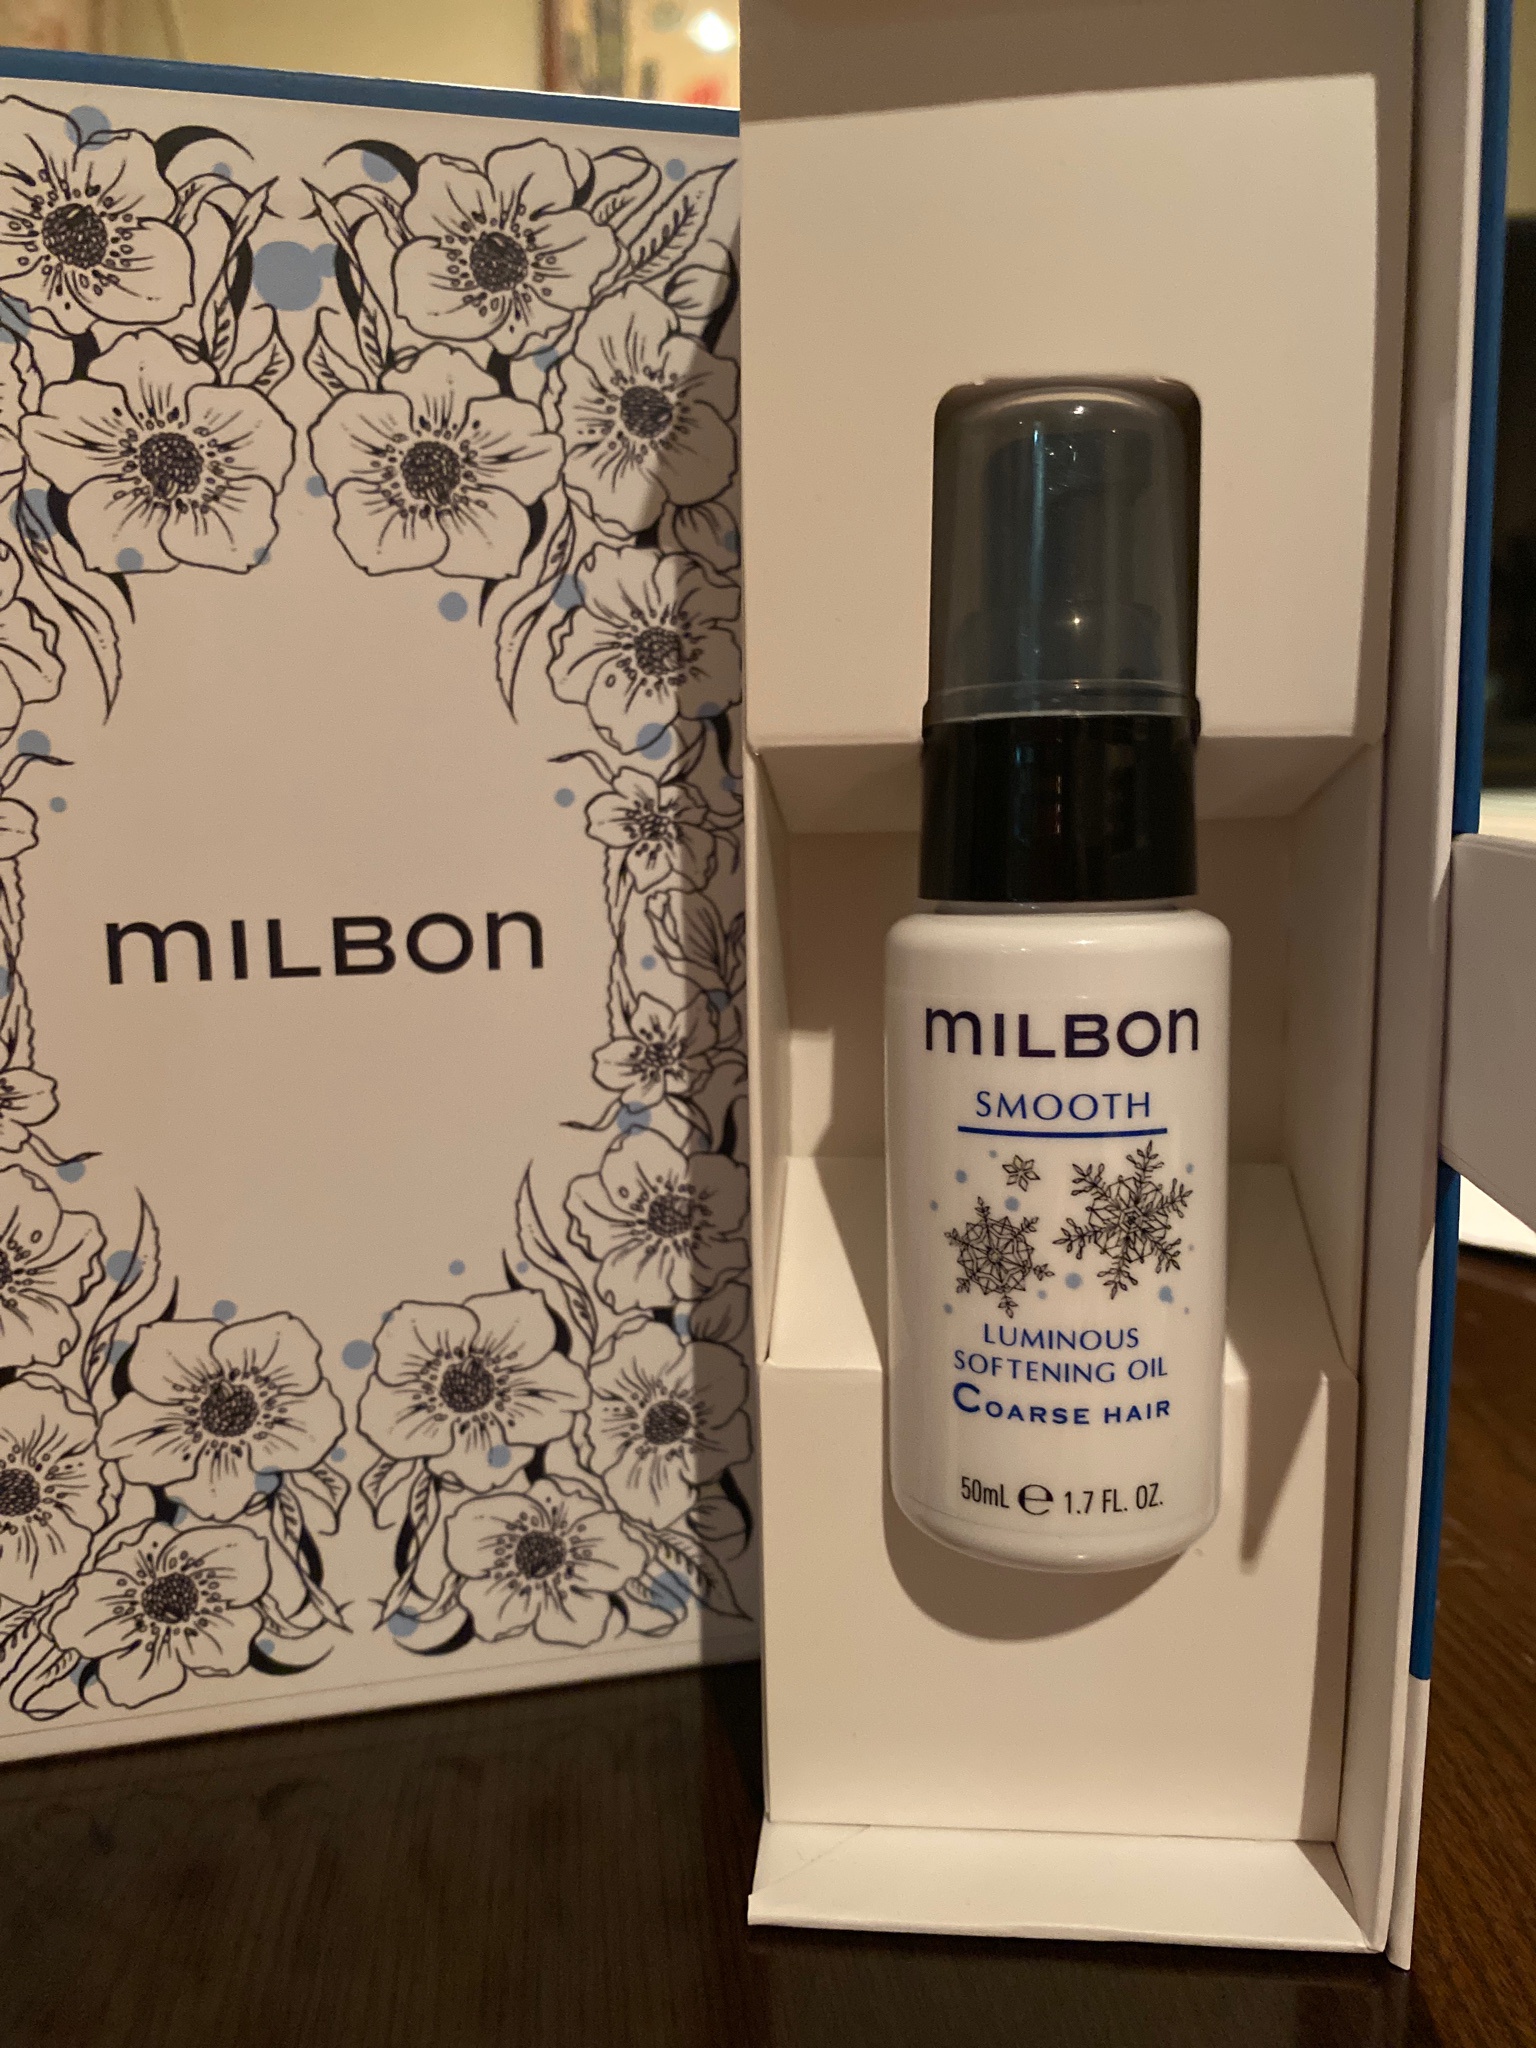 milbon / ルミナス ソフトニング オイル Coarse hairの公式商品情報